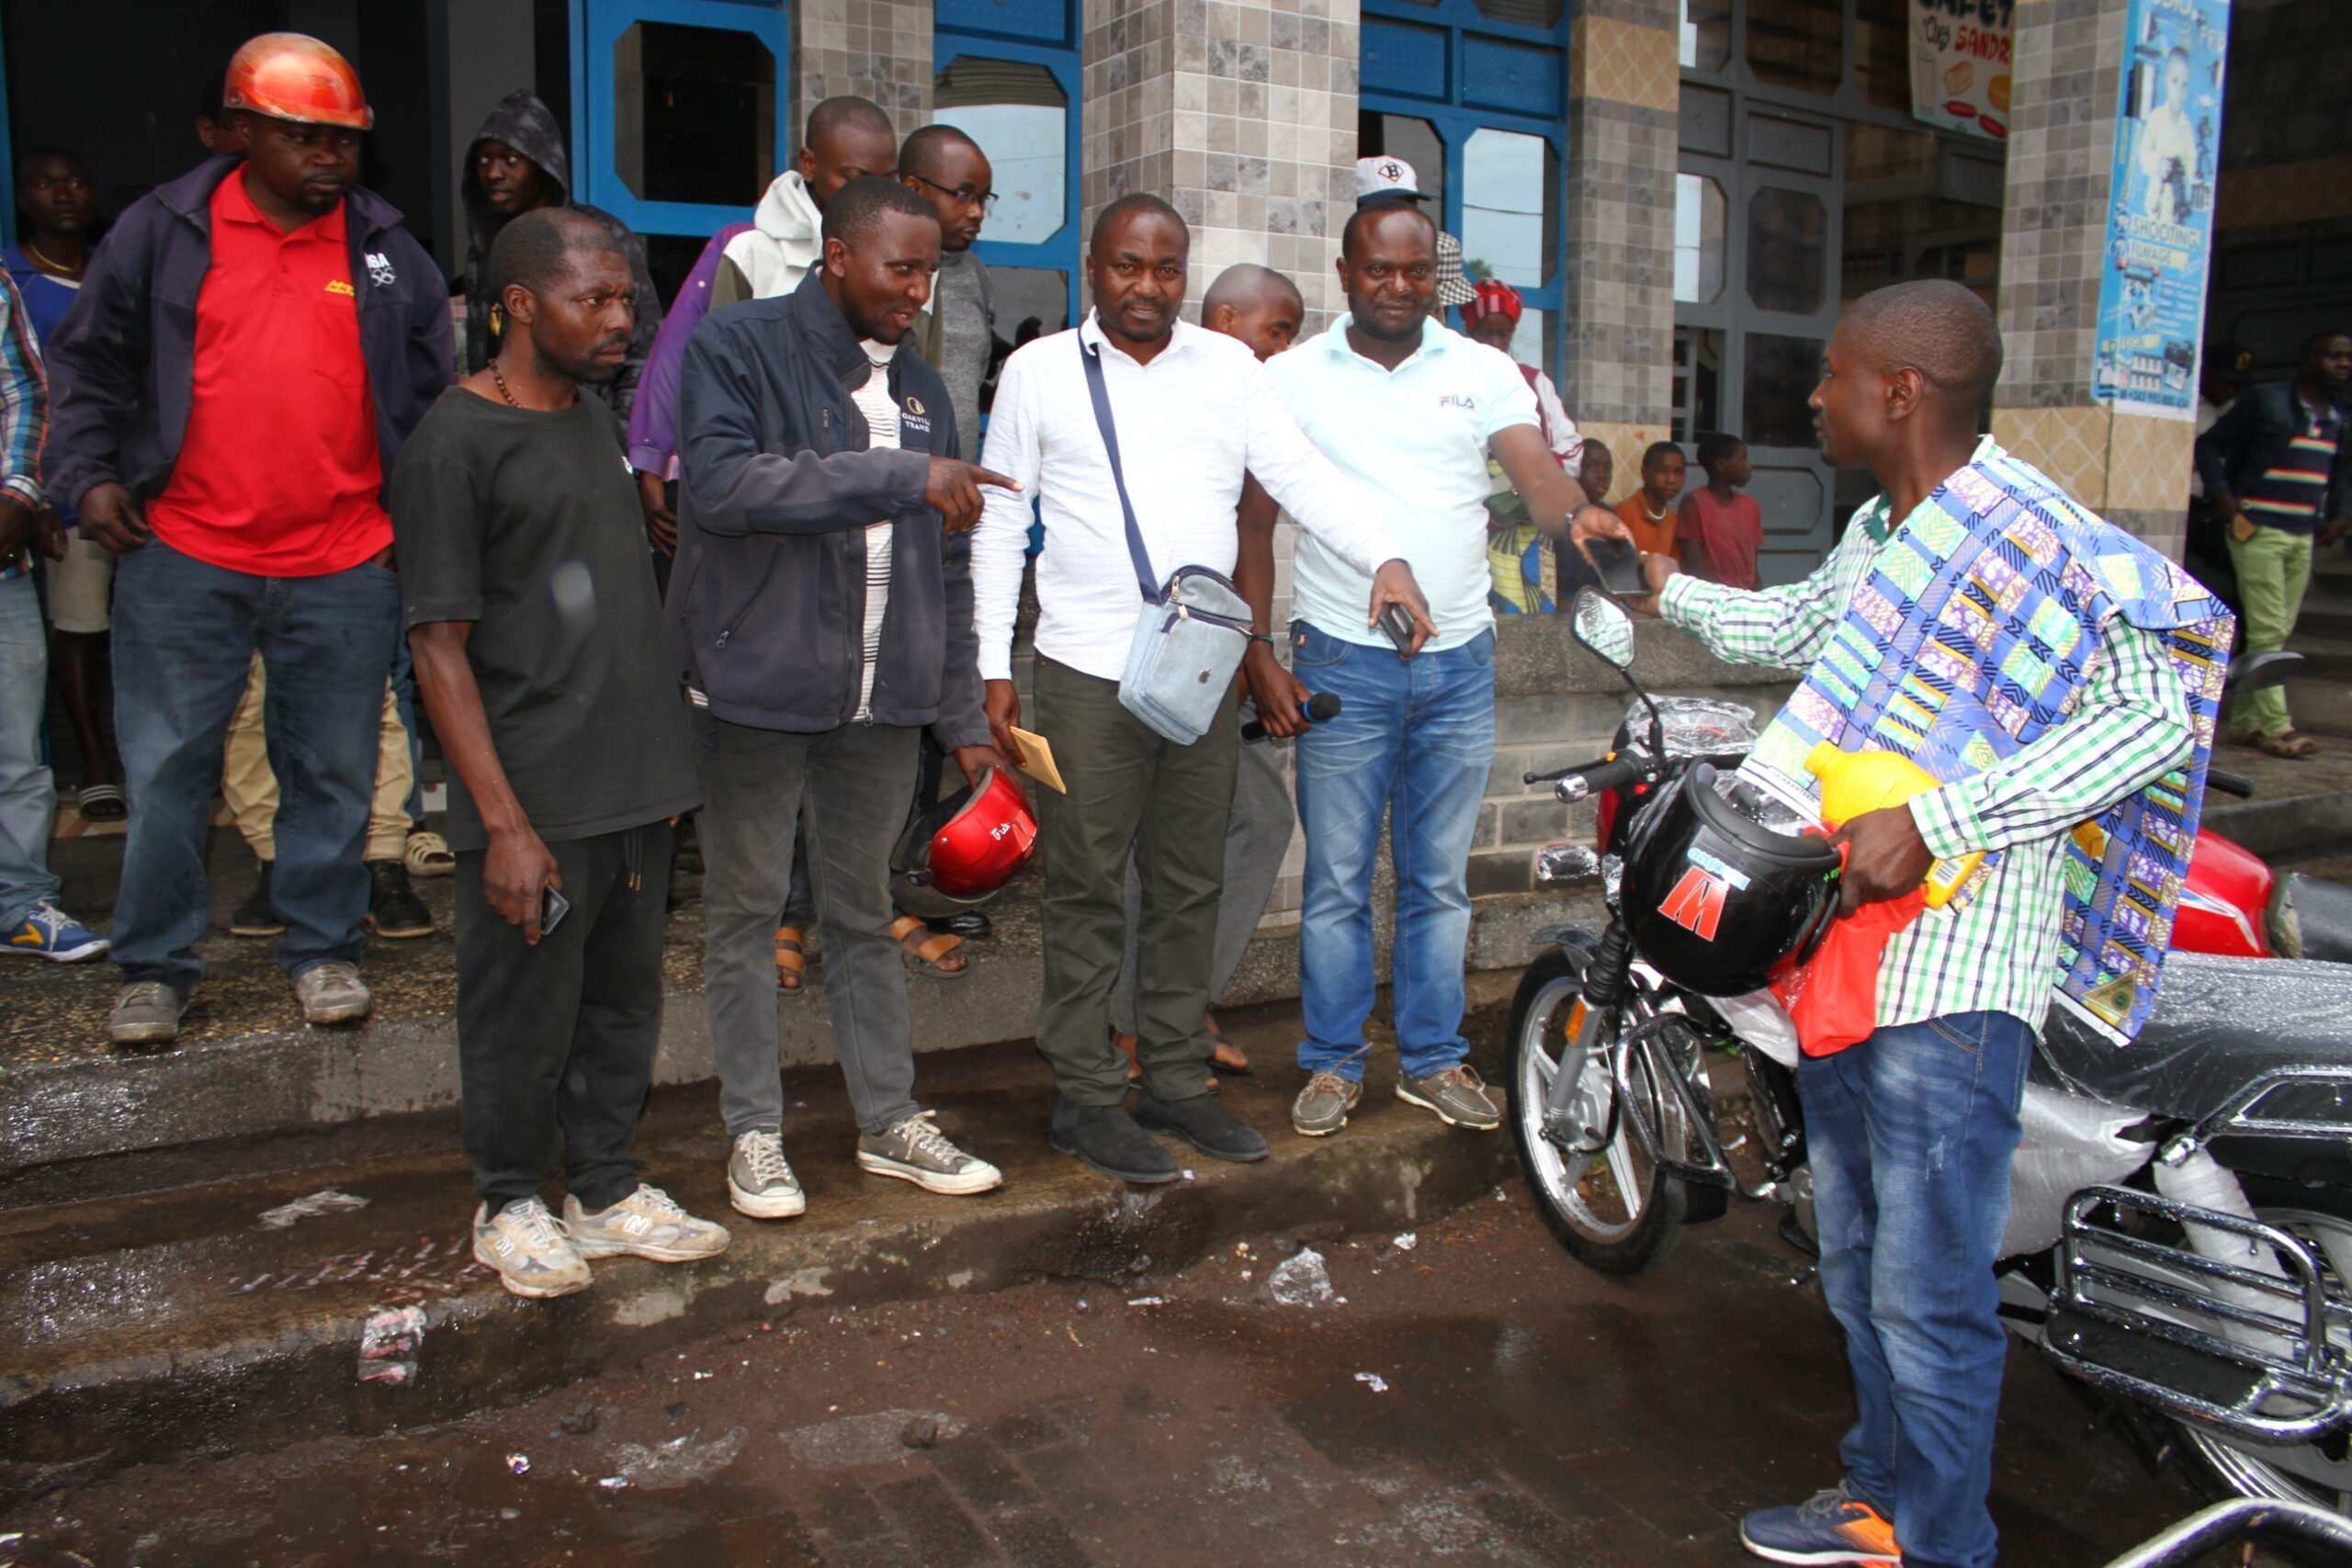 Nyiragongo: Luc Lango, un héro sous l’ombre lutte contre la pauvreté avec des nouvelles visions